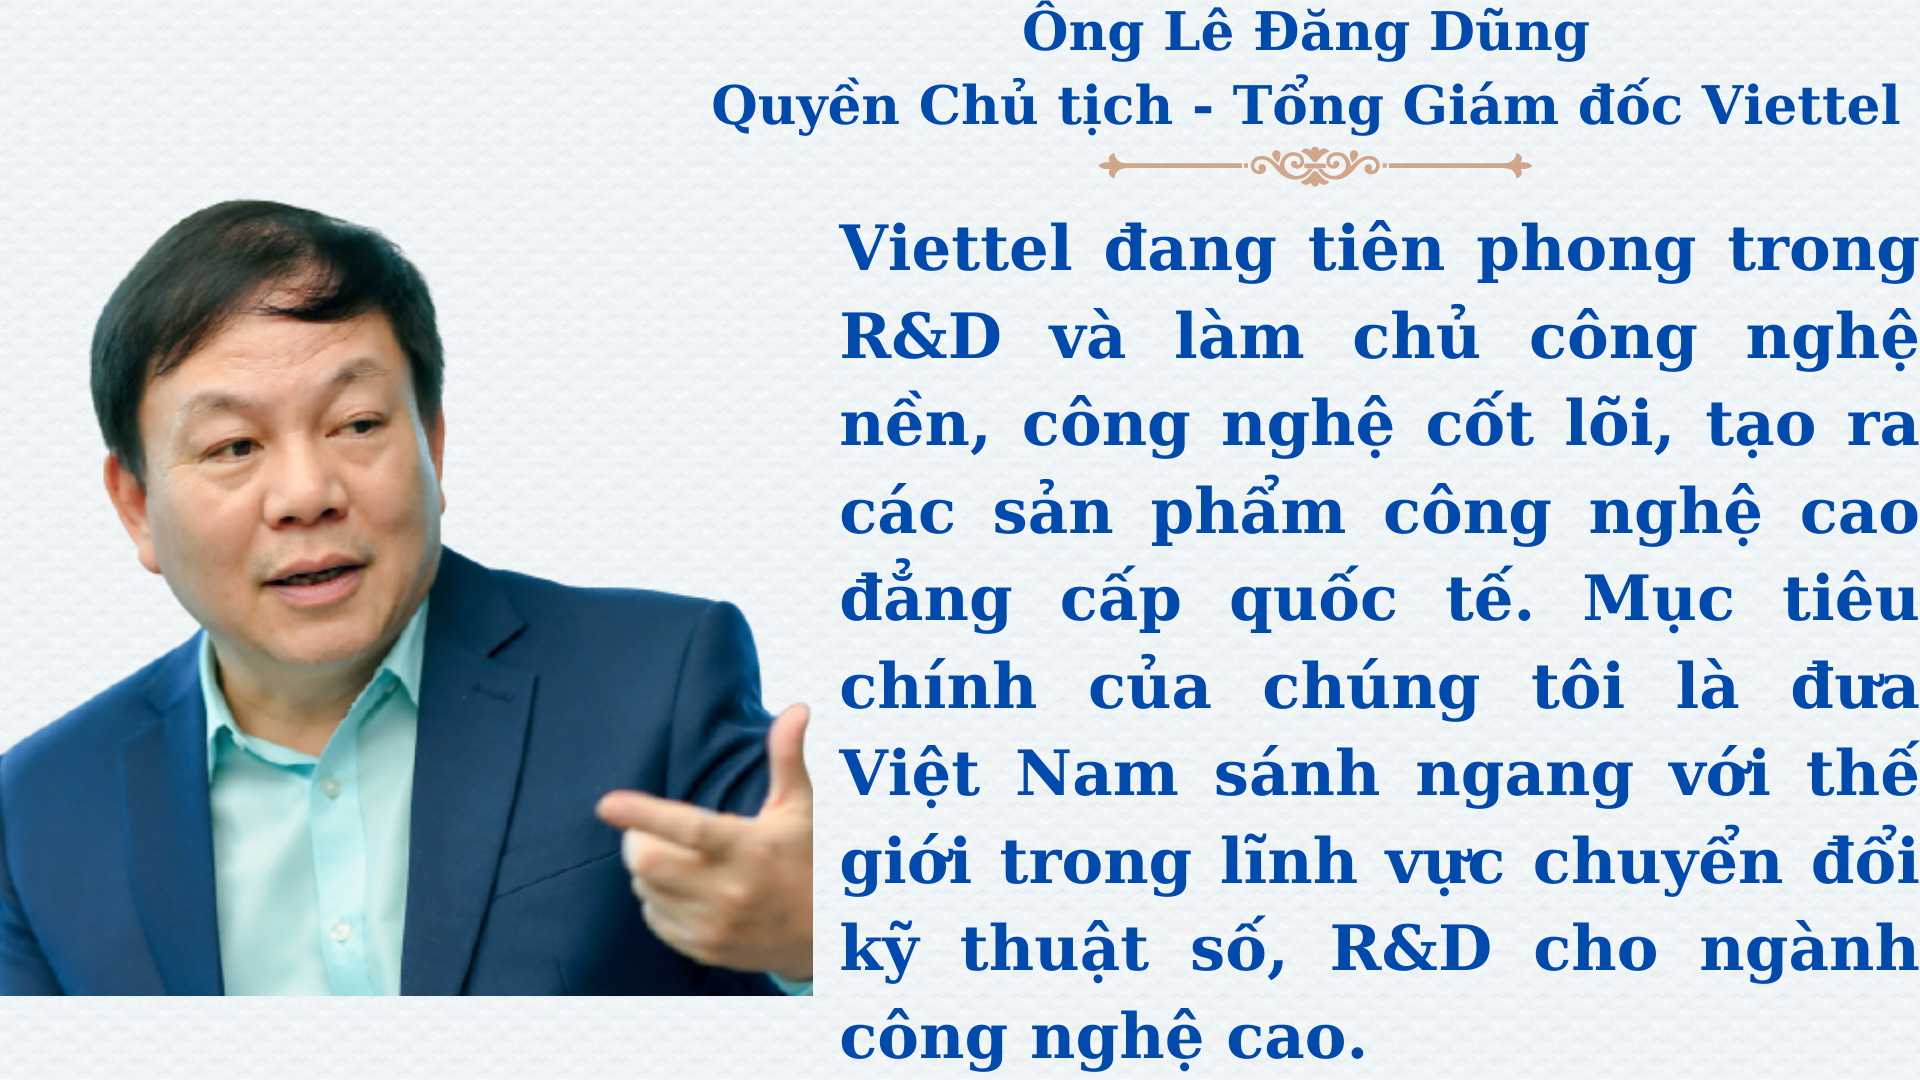 5G - Nhân tố đột phá cho nên kinh tế Việt Nam - Ảnh 7.